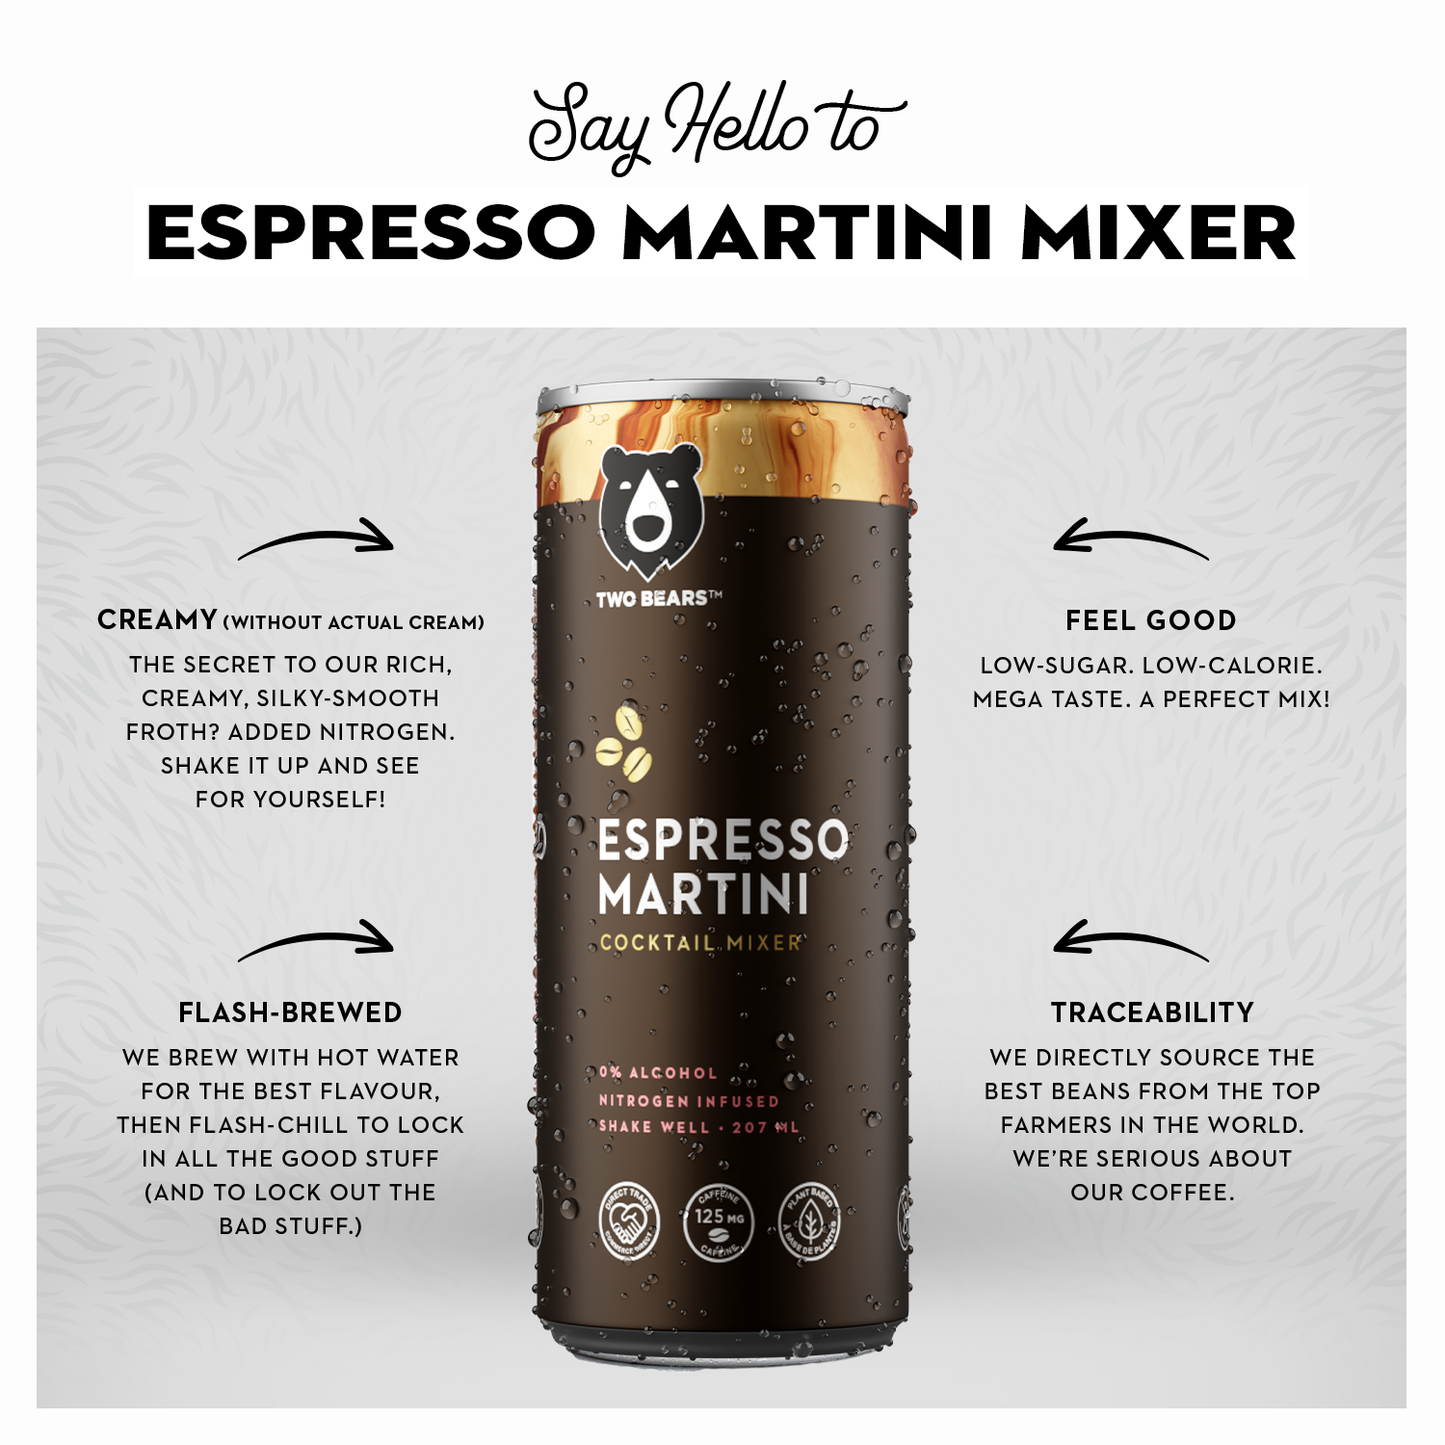 Two Bears Espresso Martini